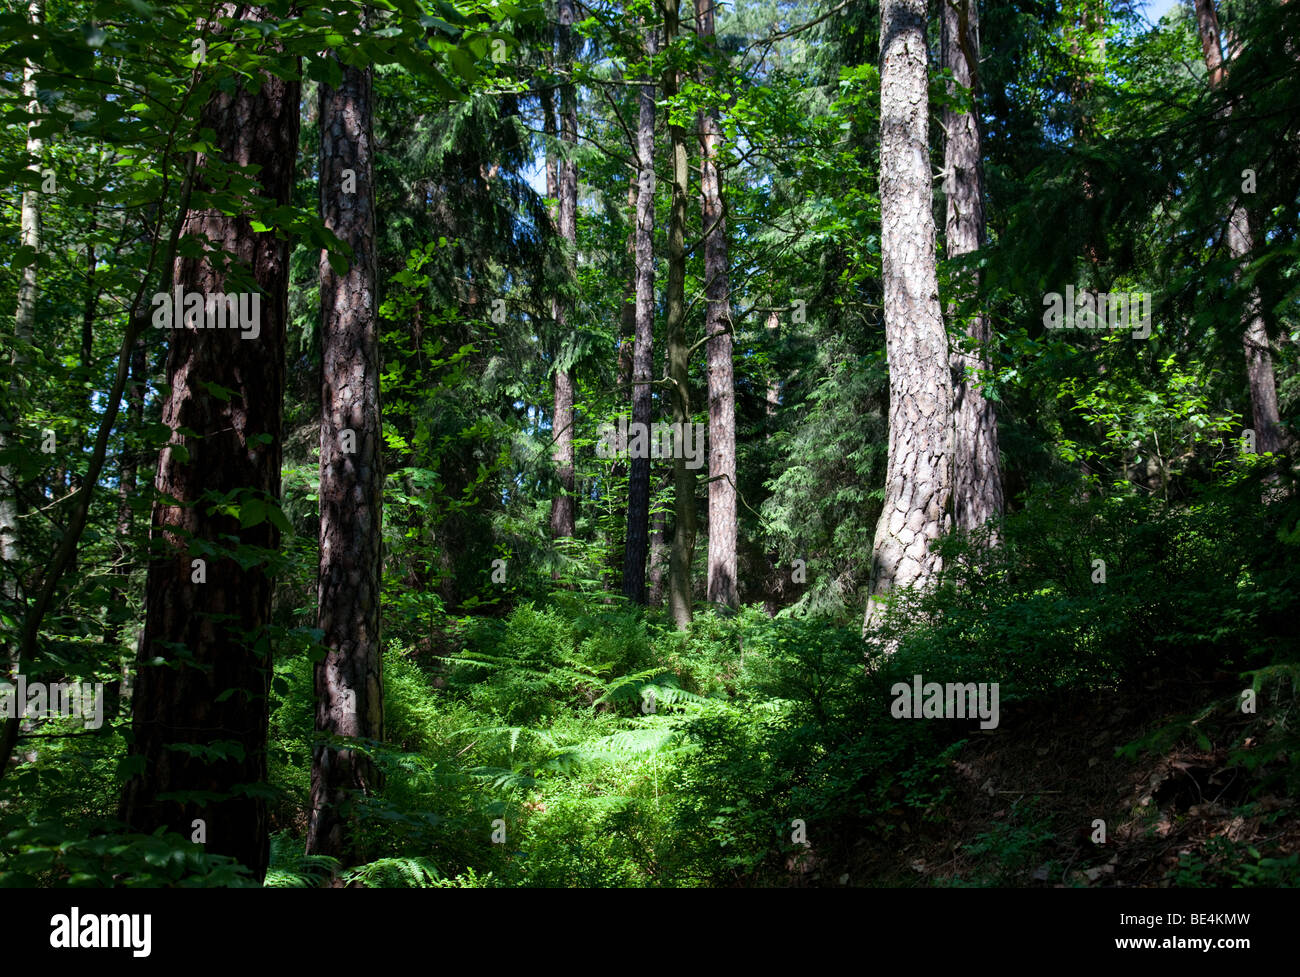 Forest in the national park 'Sächsische Schweiz' in Saxony, Germany Stock Photo